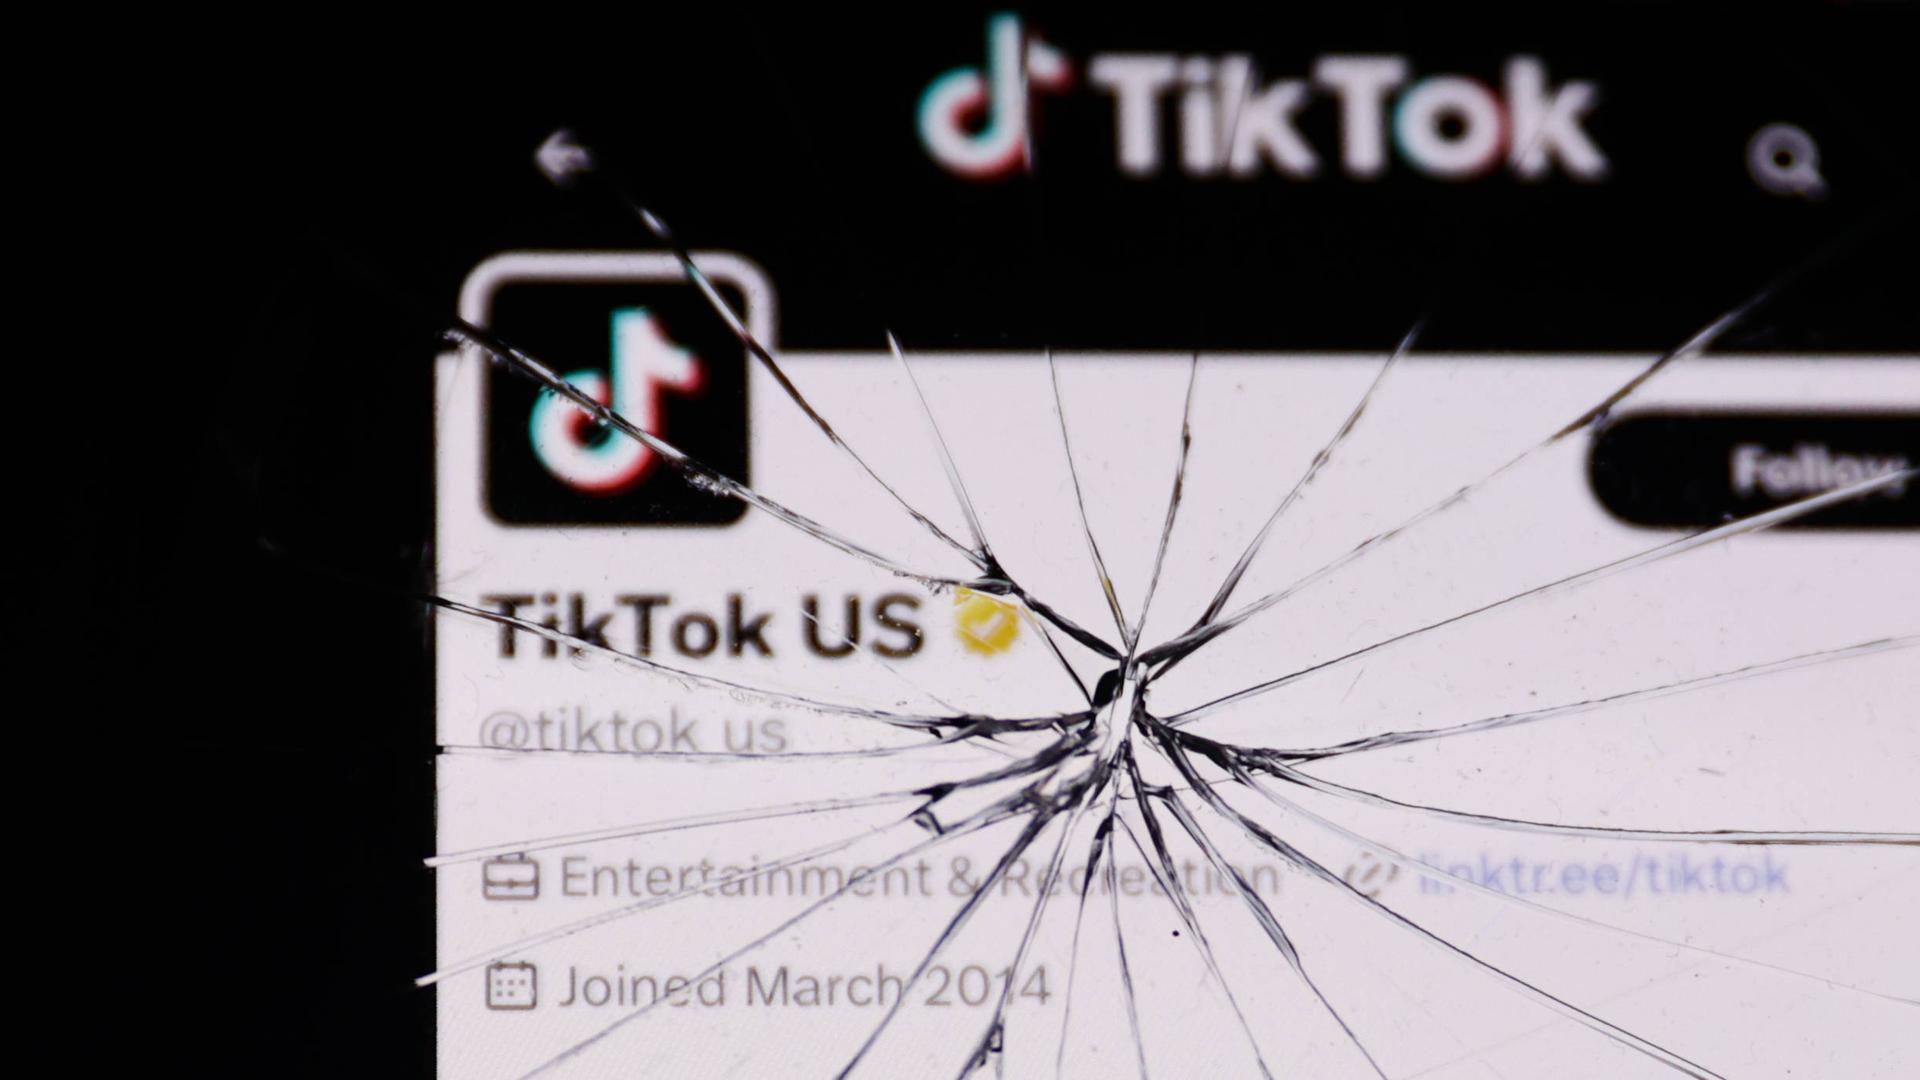 Ein US-amerikanischer TikTok-Account auf einem gesprungenen Smartphone-Bildschirm.